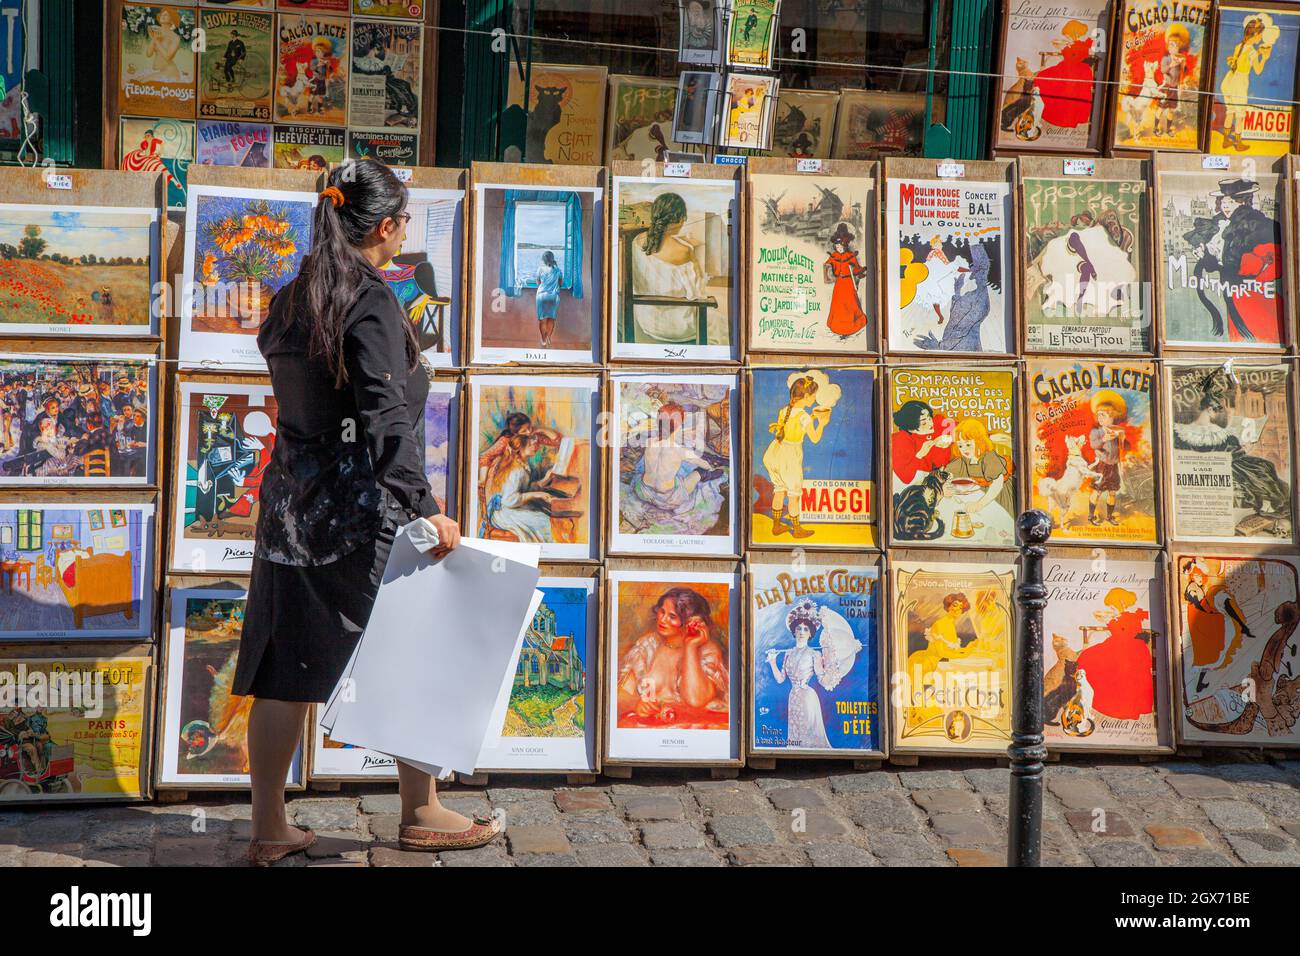 Femelle marchand vendant des reproductions d'œuvres d'art historiques rendues célèbres dans et autour de Paris - Montmartre, Paris, France Banque D'Images